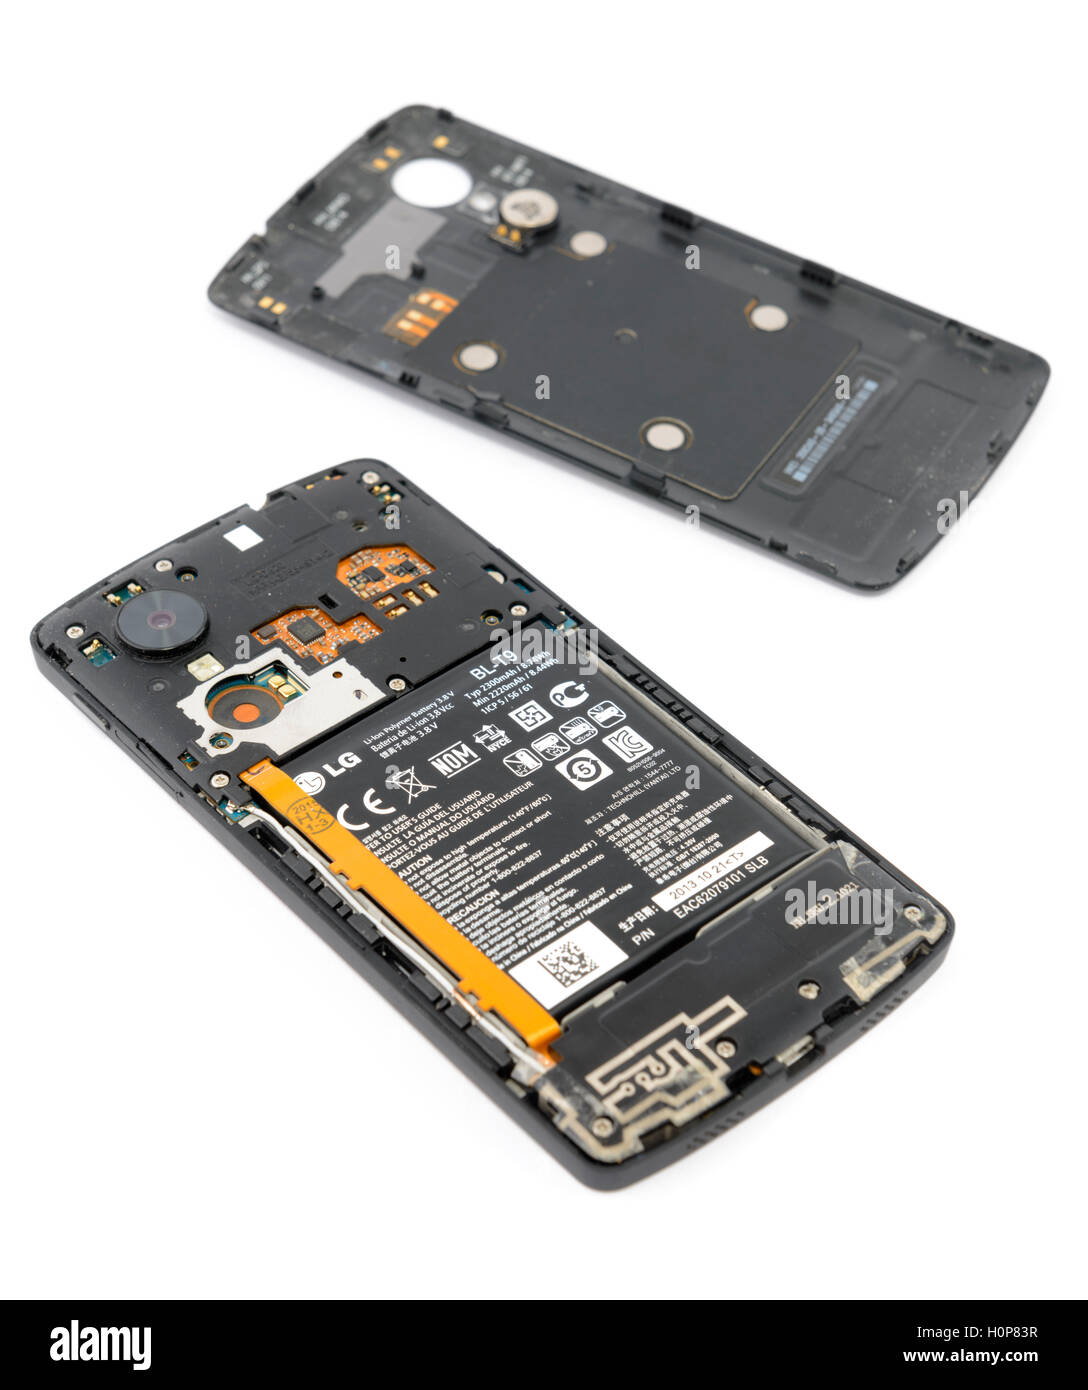 Batteria agli ioni di litio su uno smartphone con il coperchio posteriore prese off Foto Stock